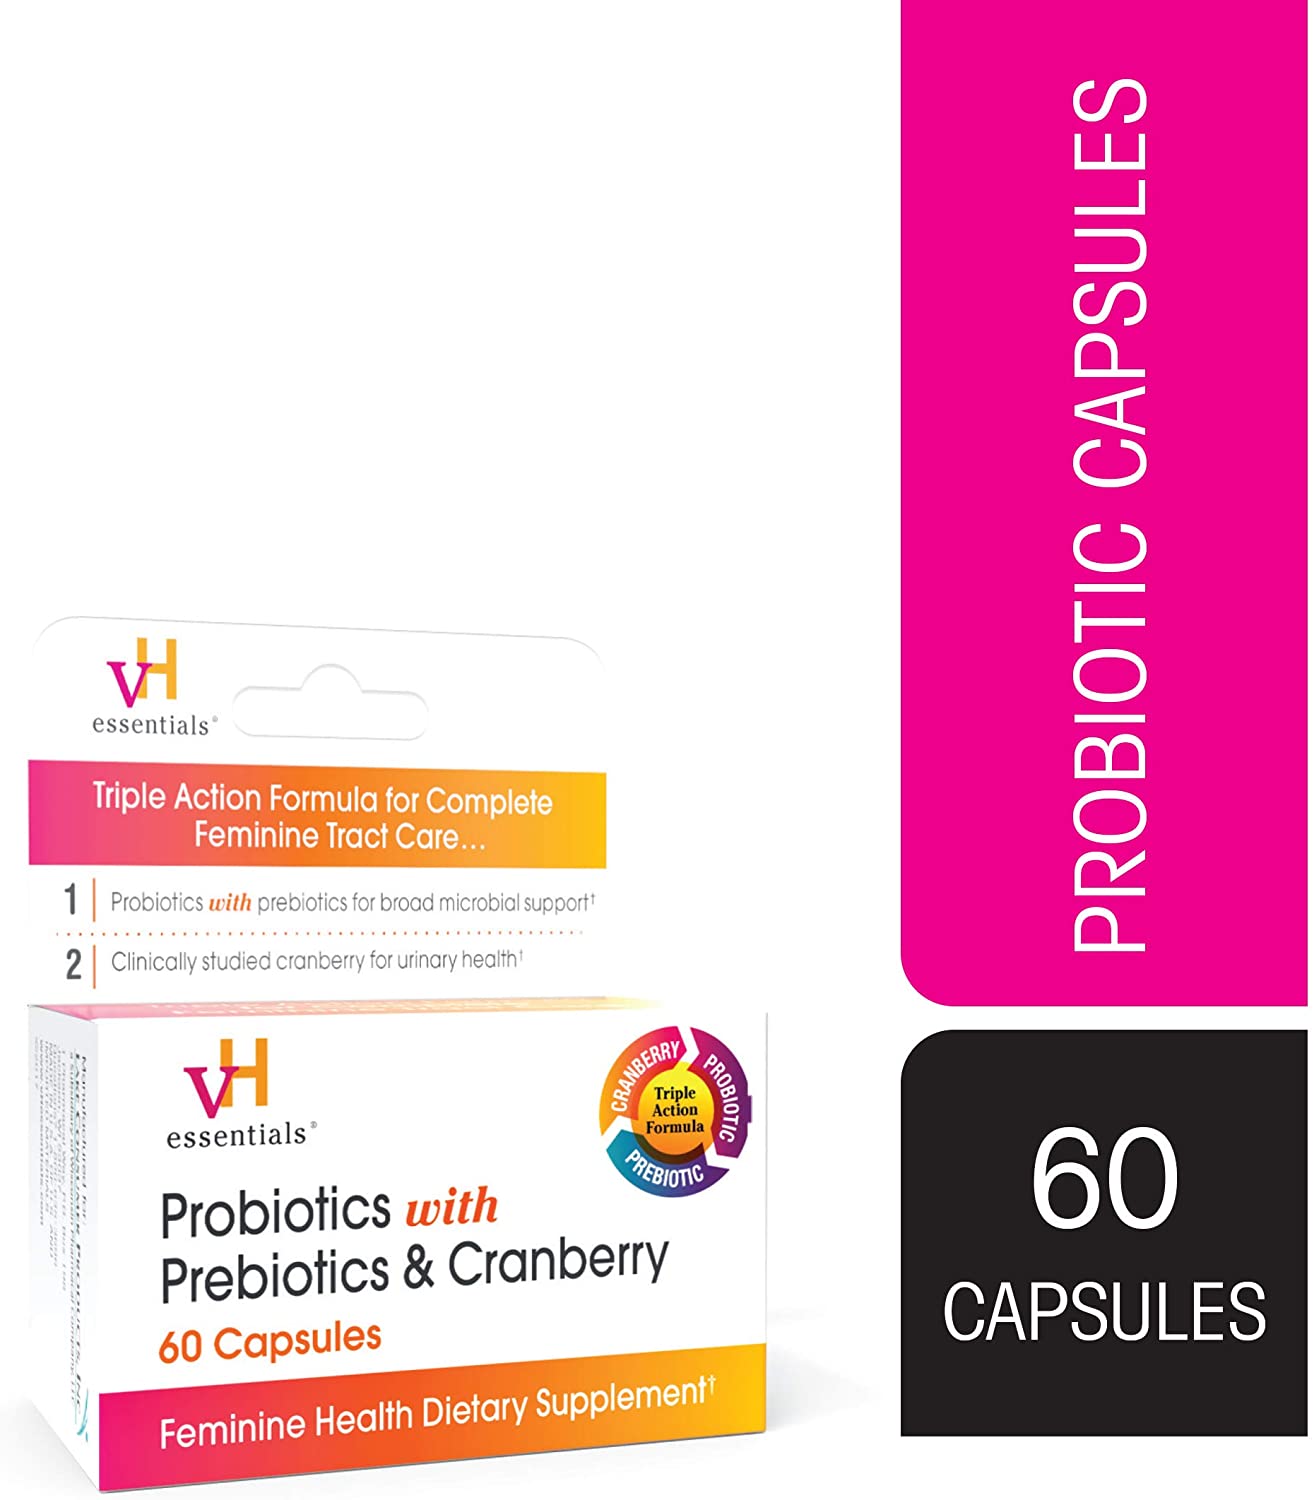 vH essentials Probiotics with Prebiotics and Cranberry Feminine Health Supplement - 60 Capsules - image 1 of 9